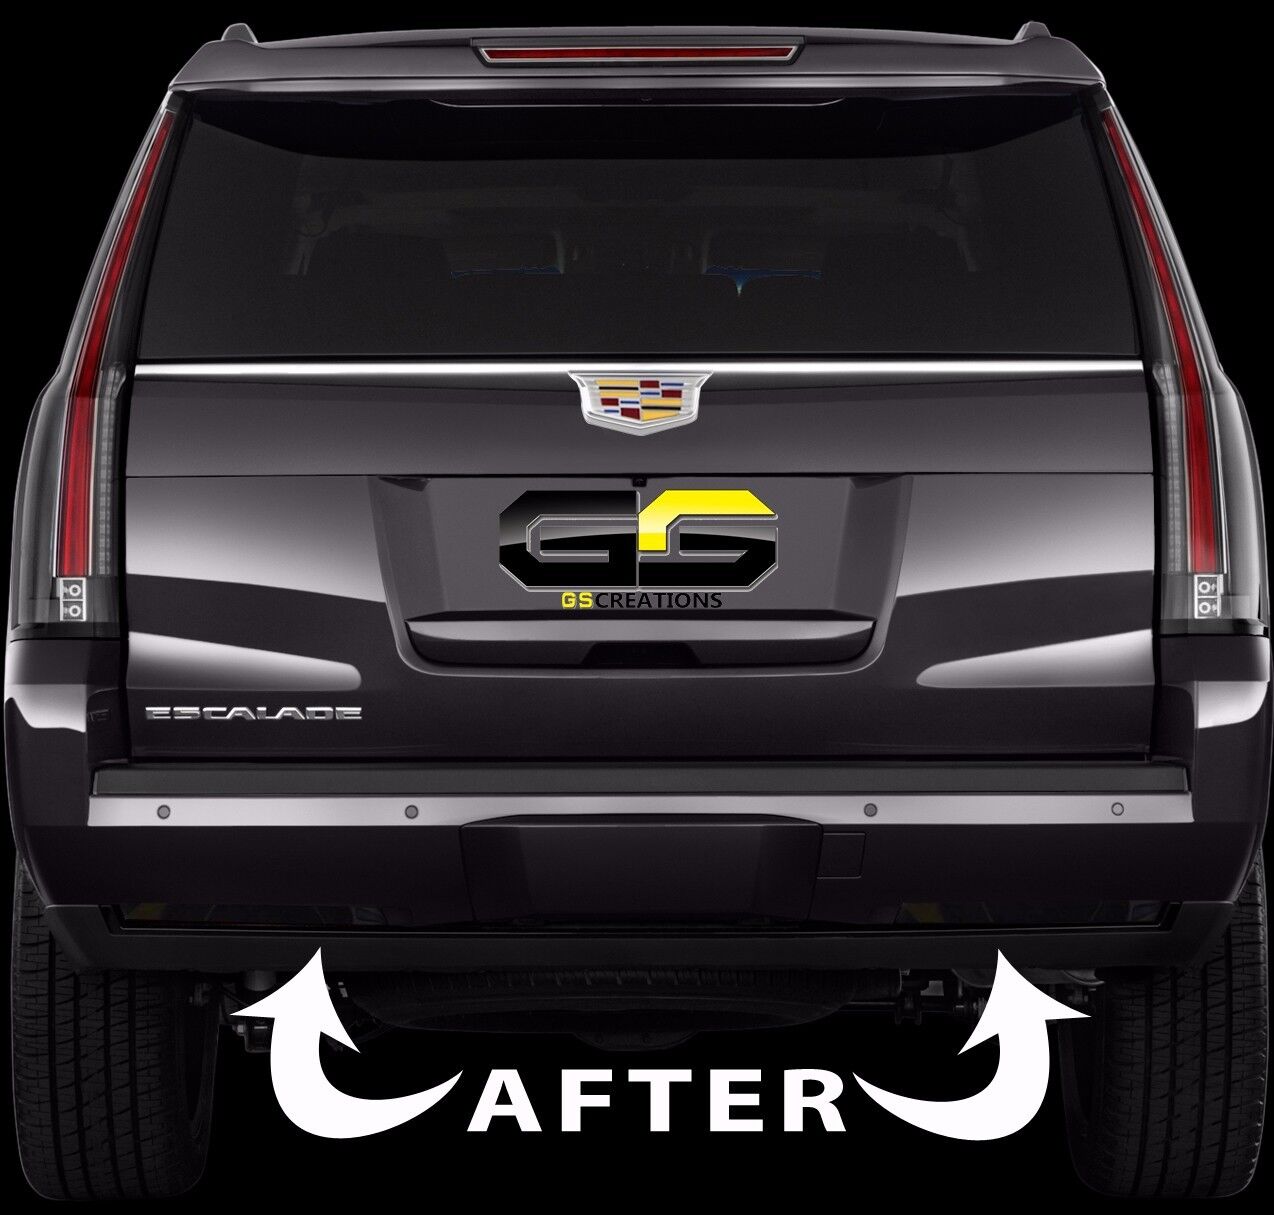 2015 - 2020 Cadillac Escalade Rear Bumper Reflector Blackout Lens Cover Kit